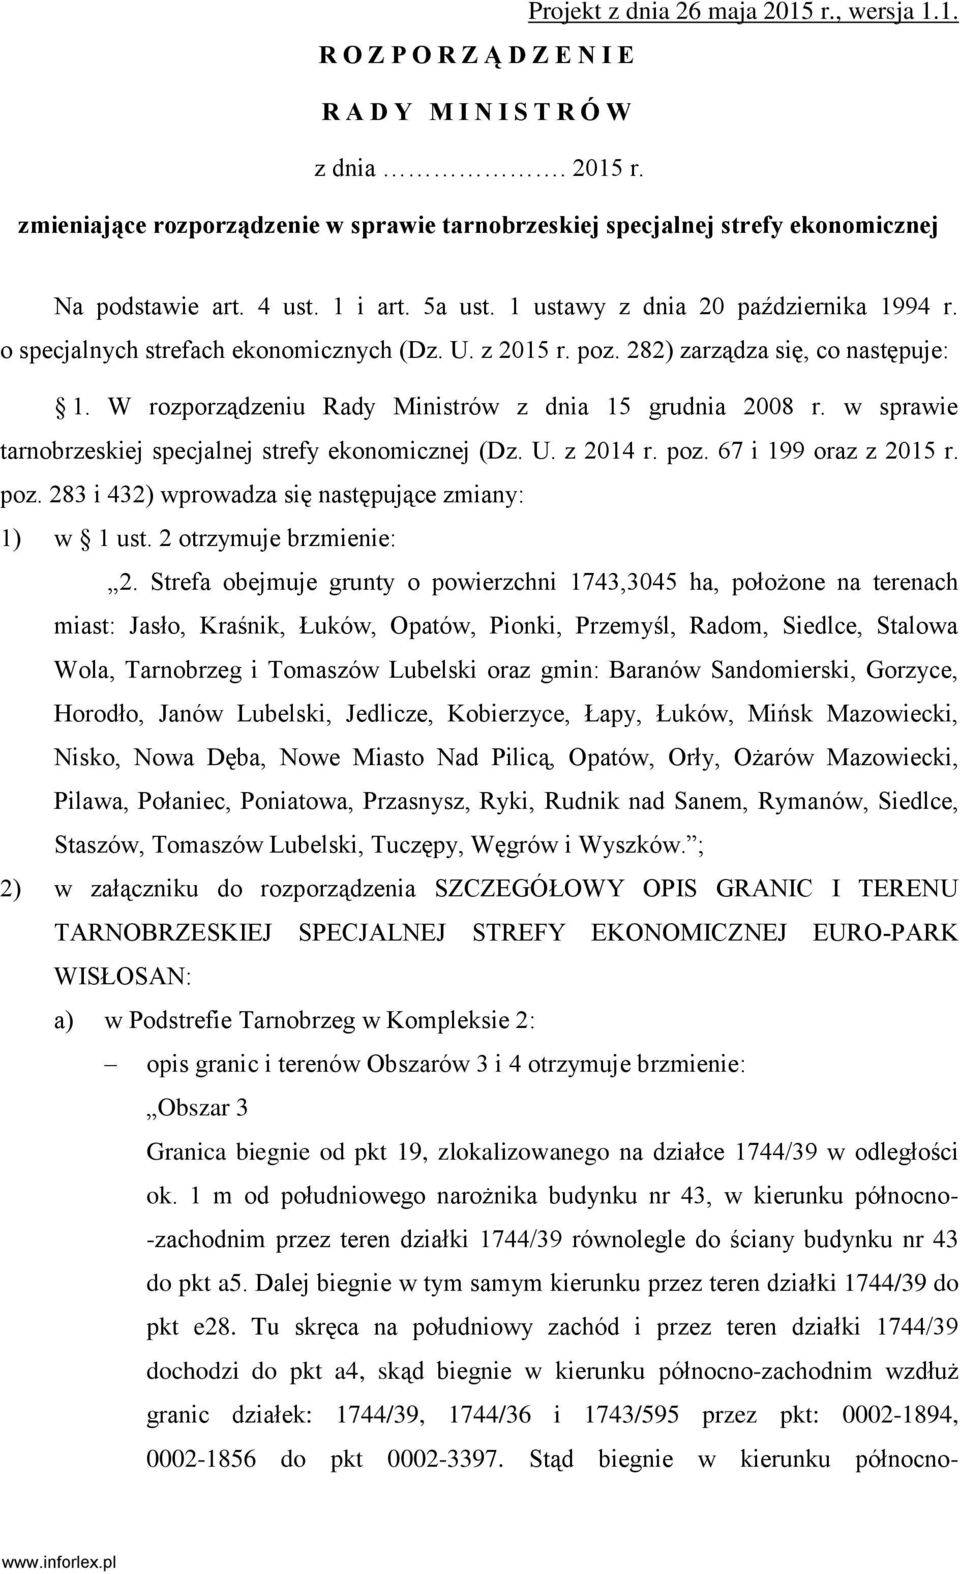 W rozporządzeniu Rady Ministrów z dnia 15 grudnia 2008 r. w sprawie tarnobrzeskiej specjalnej strefy ekonomicznej (Dz. U. z 2014 r. poz. 67 i 199 oraz z 2015 r. poz. 283 i 432) wprowadza się następujące zmiany: 1) w 1 ust.